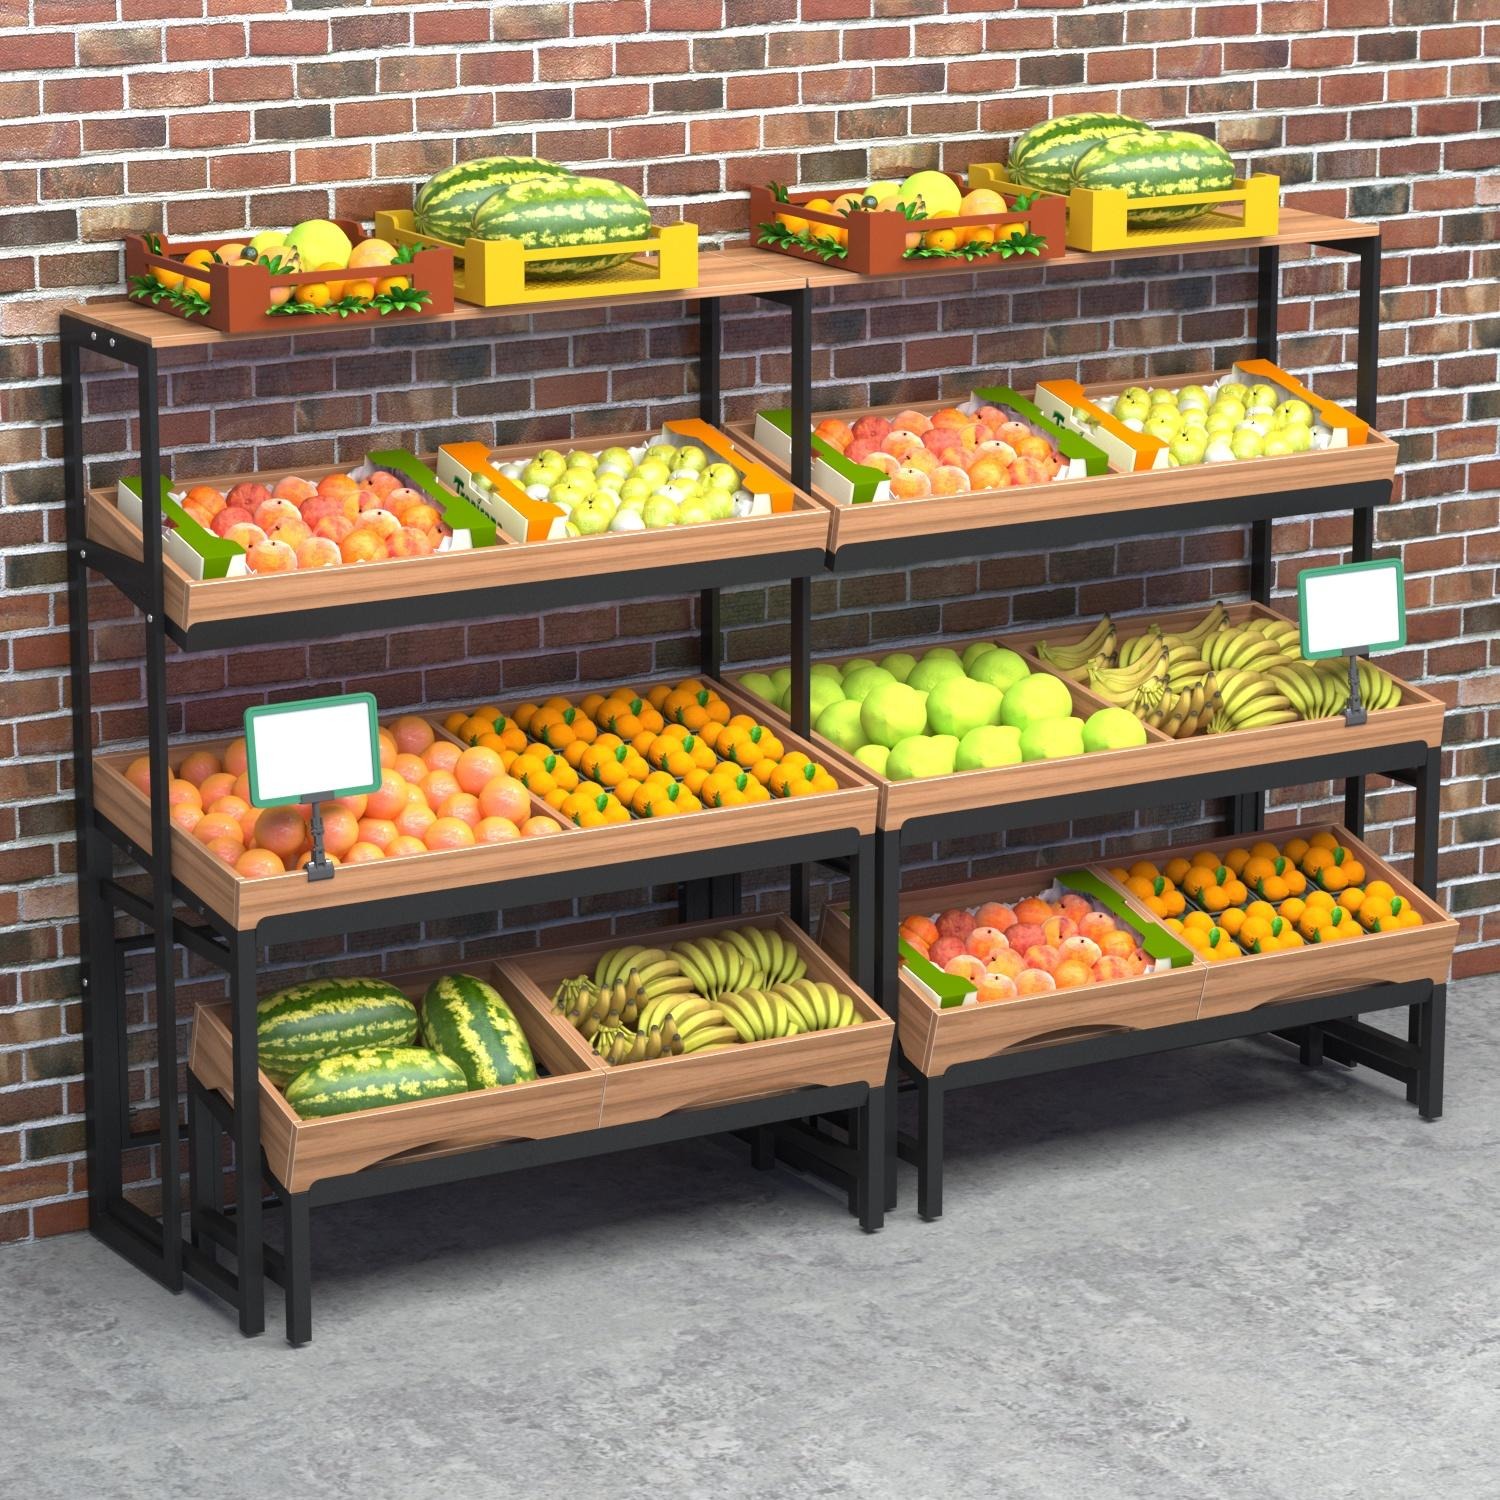 坚塔货架包装水果类水果架 商超货架